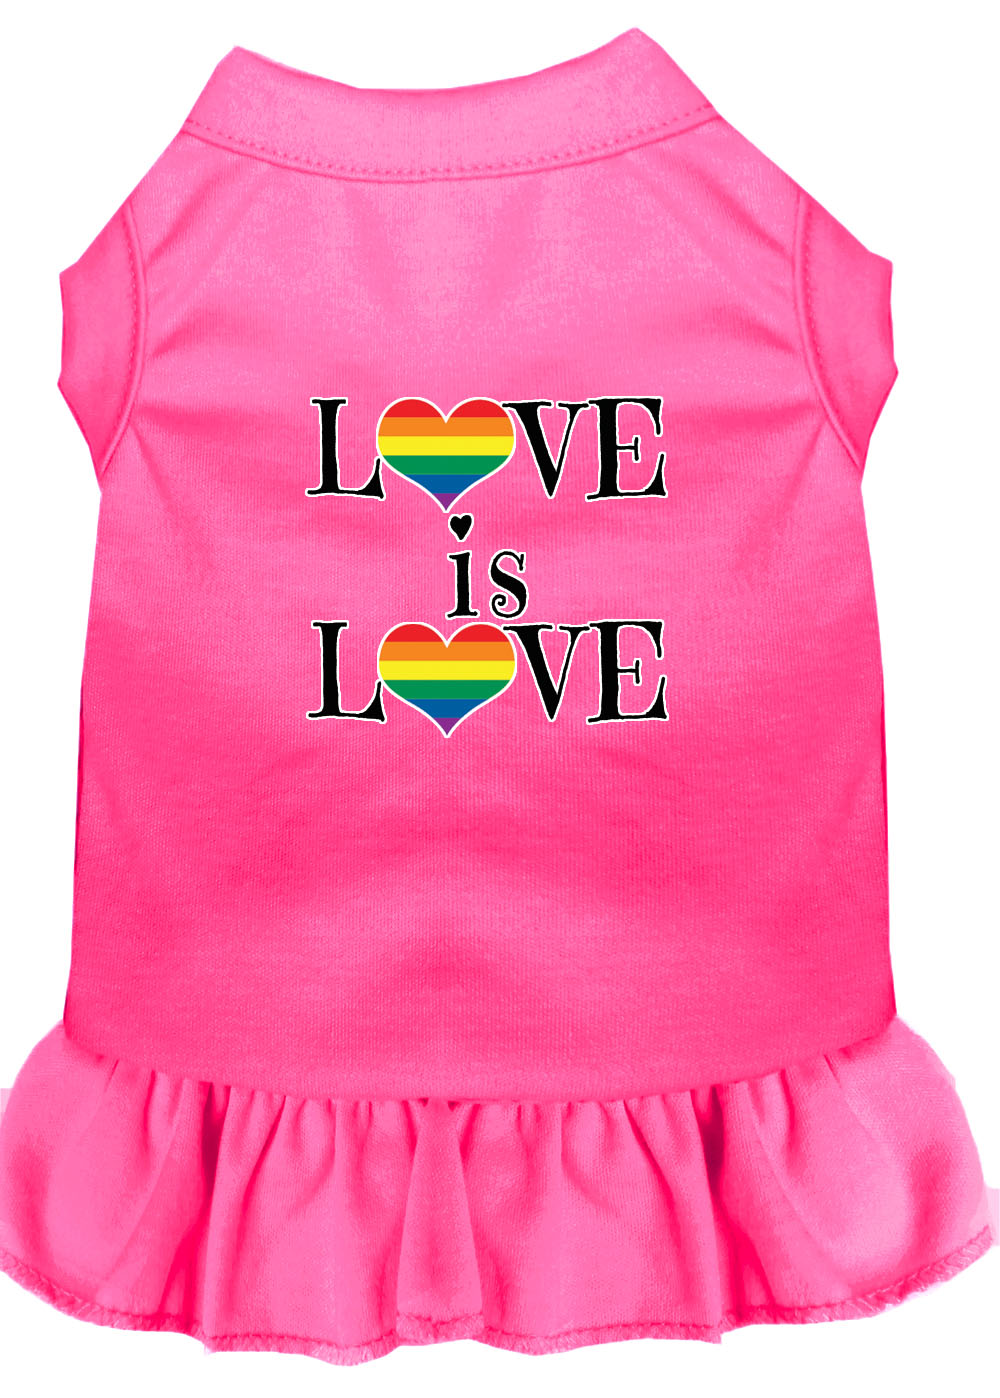 Love is Love Screen Print Dog Dress Bright Pink XXL